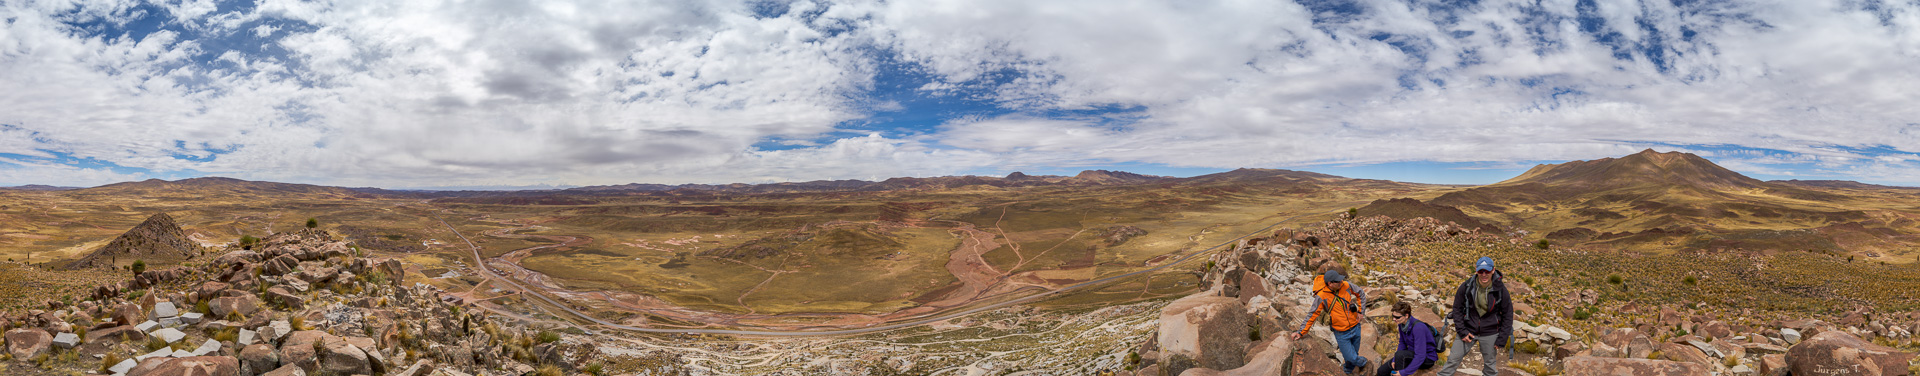 Gipfelrundblick vom Huayna Potosí bis zum Sajama.